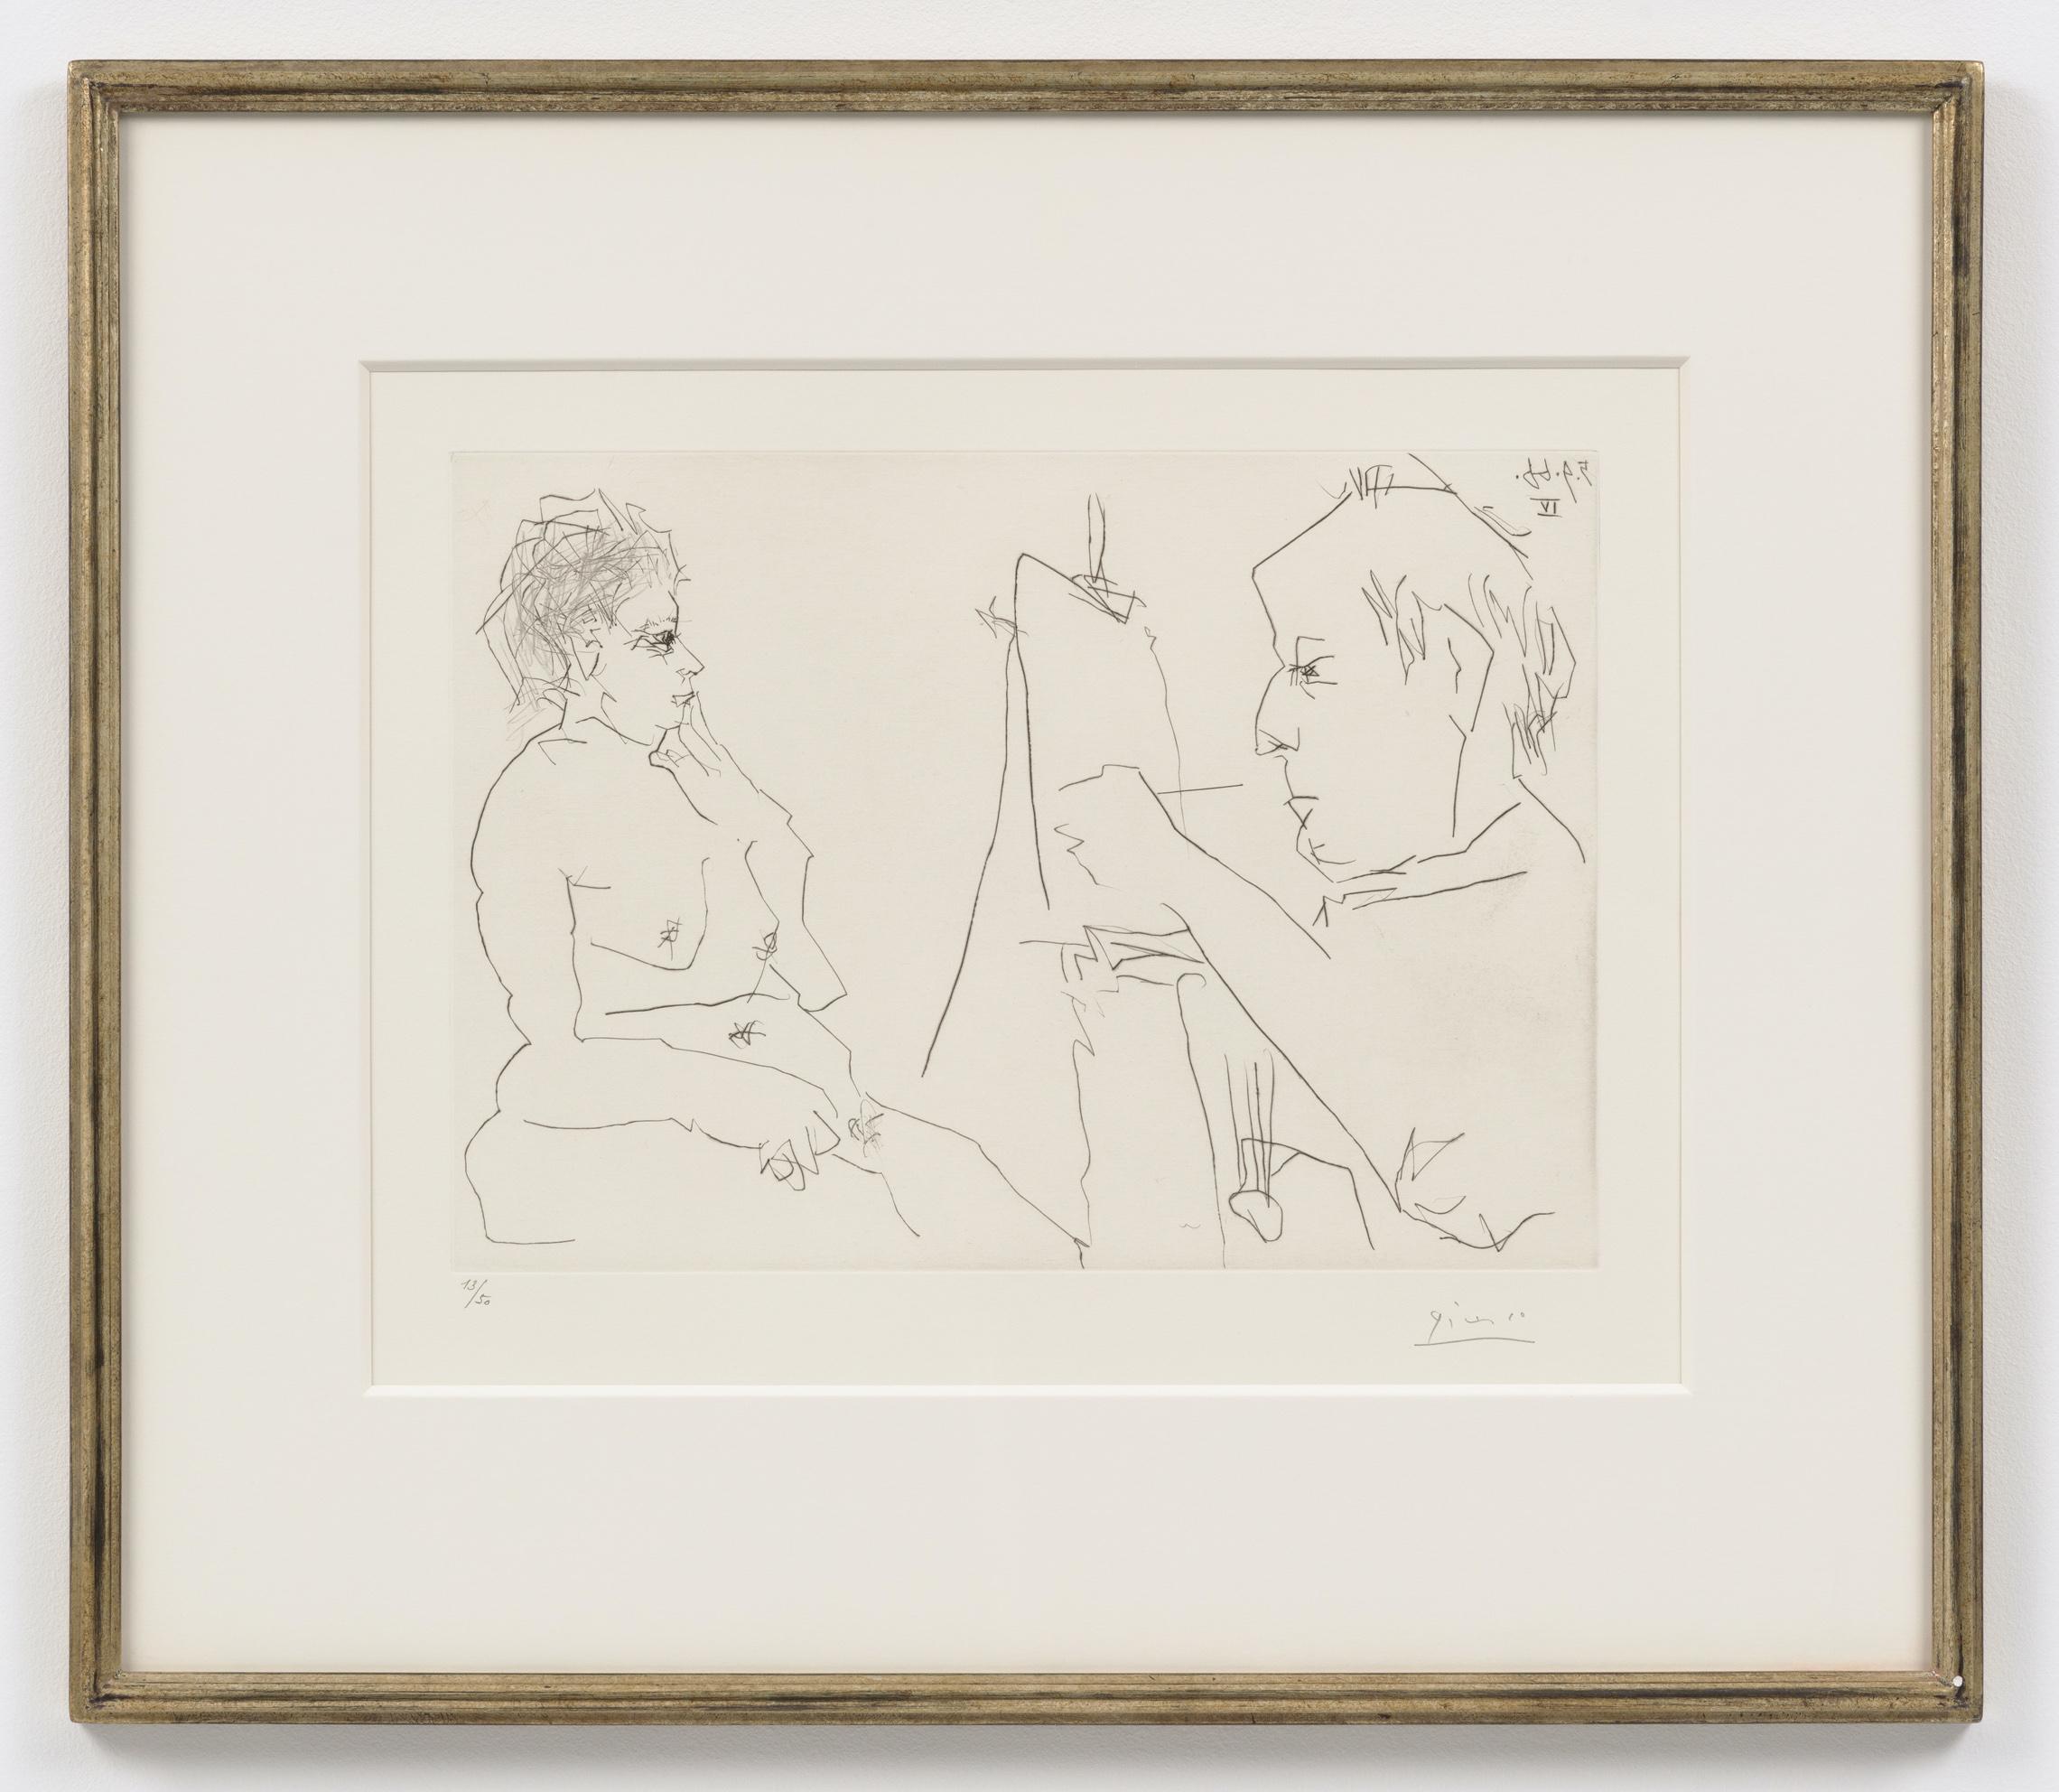 Pablo Picasso Nude Print – Peintre et Model [Modele et peintre chauve], 5. September 1966 IV